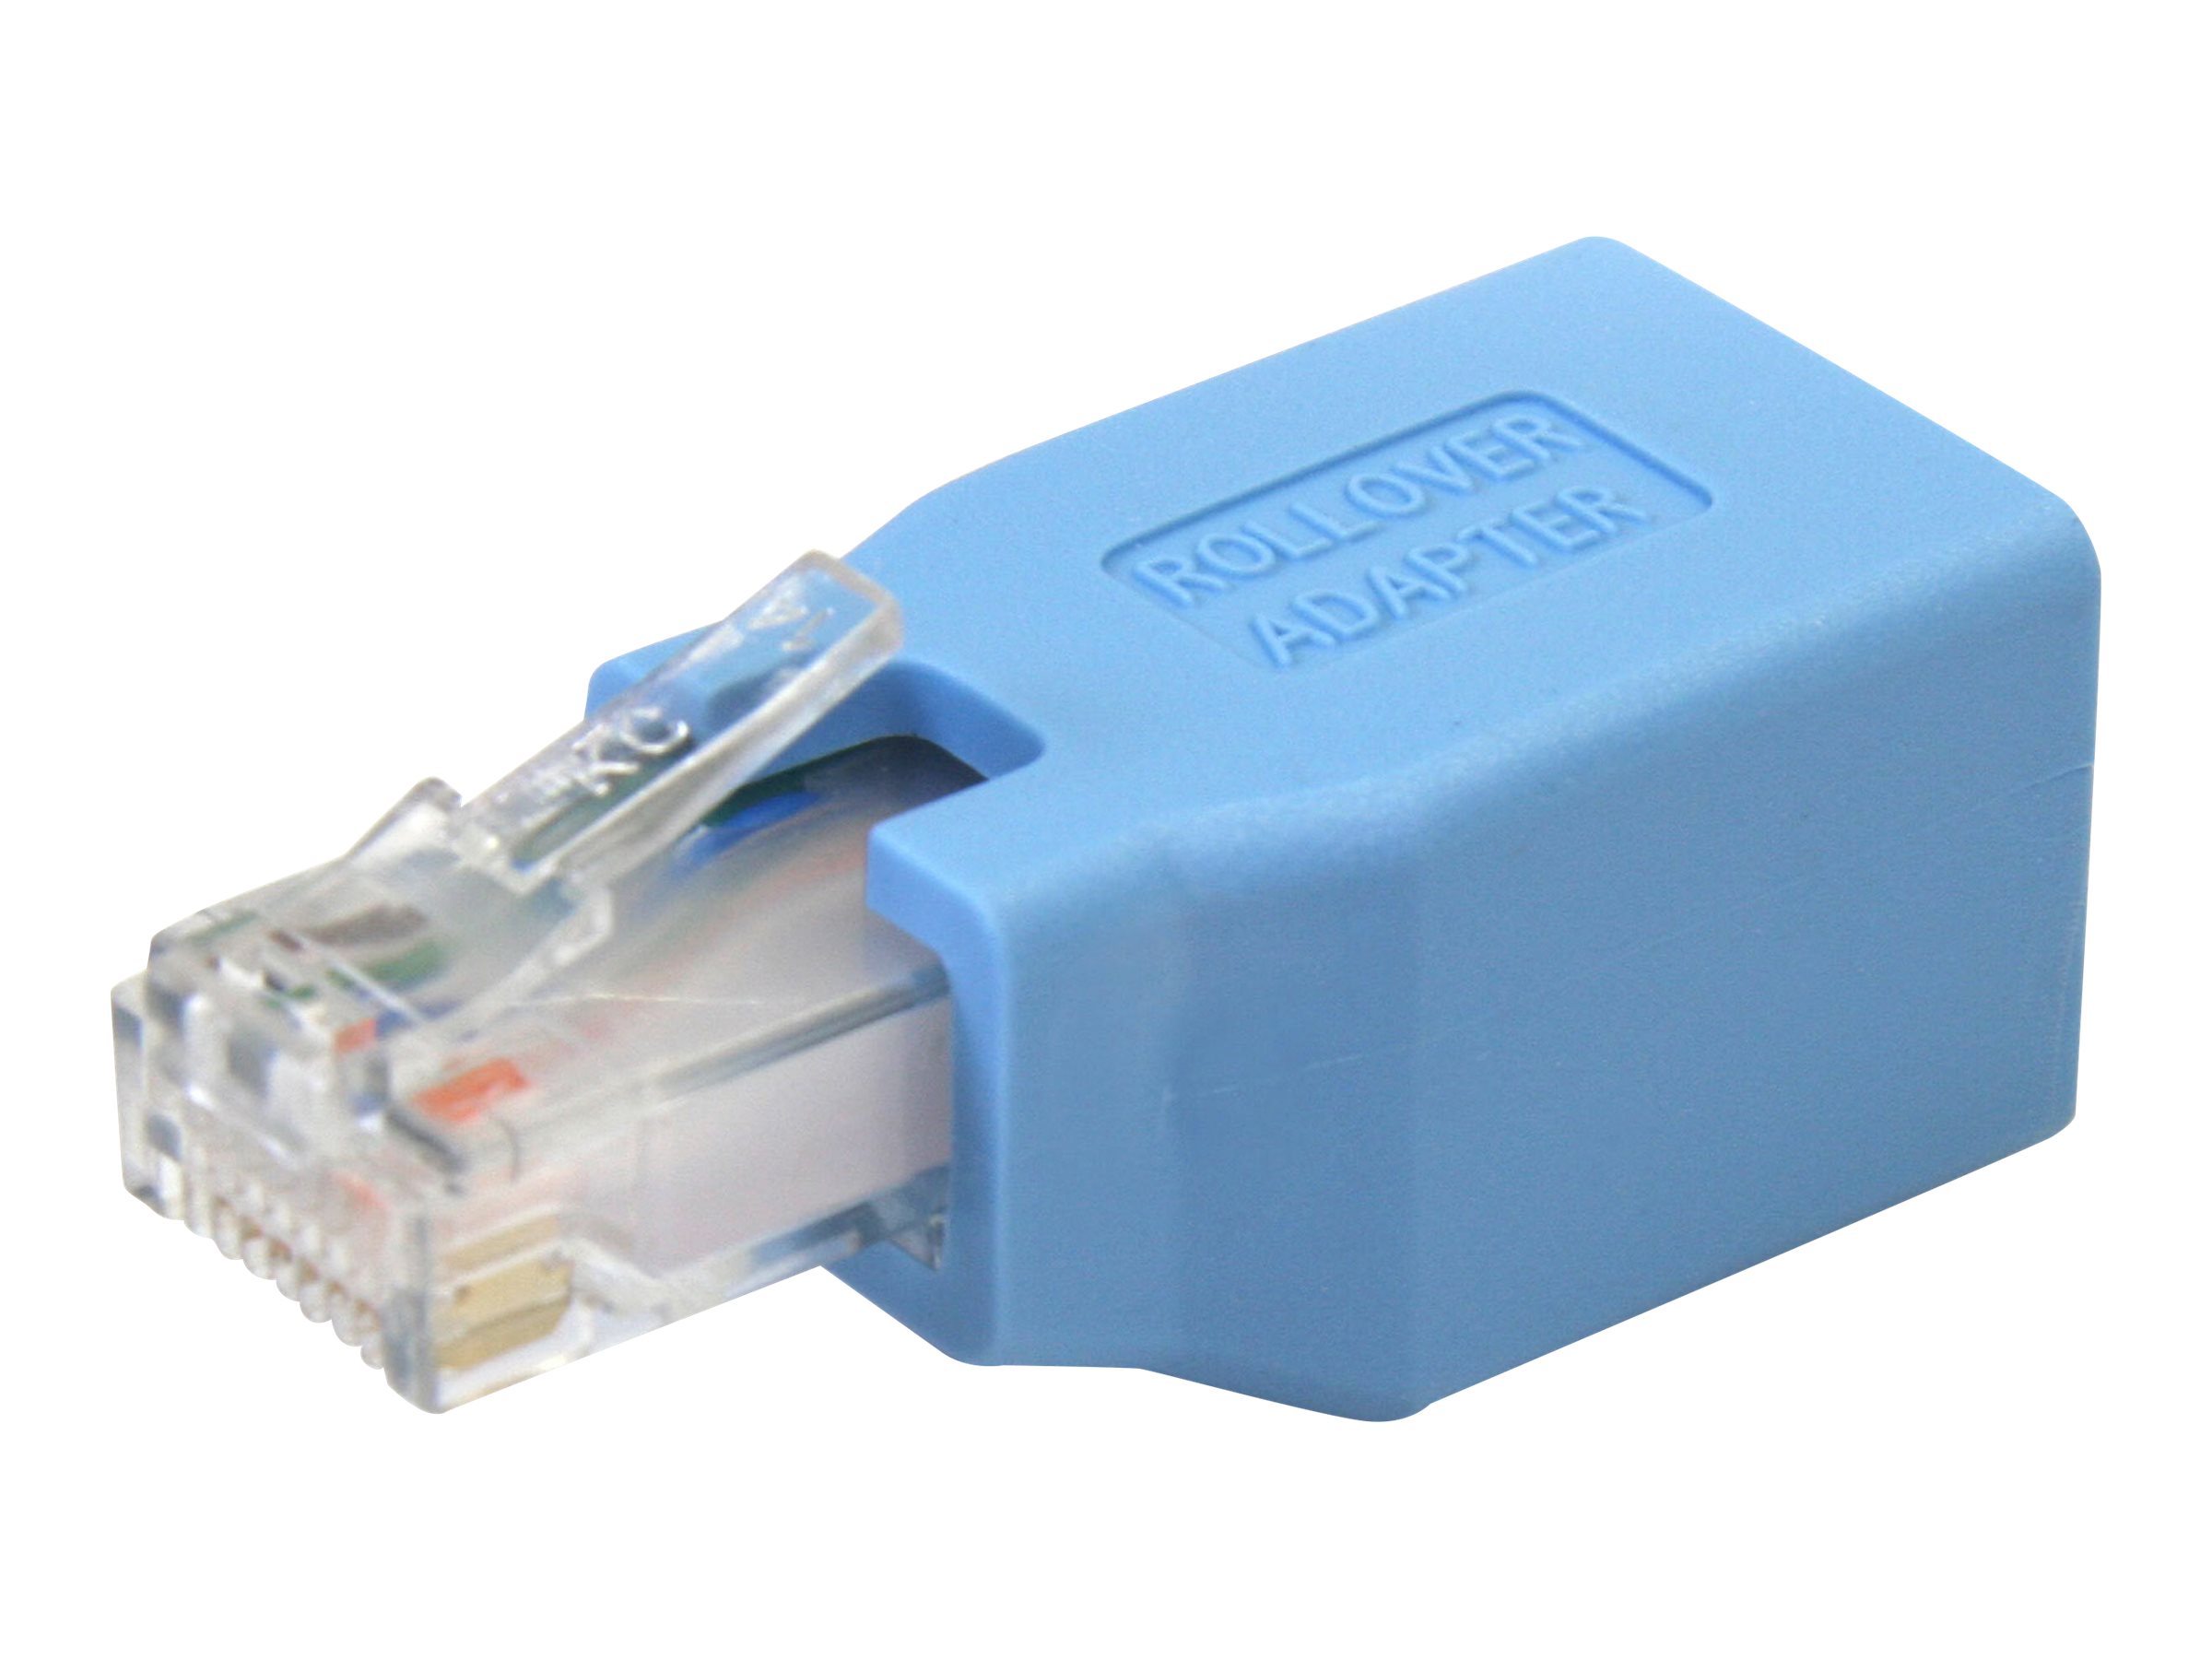 StarTech.com Cisco Konsolen Rollover Adapter fr RJ45 Ethernet Kabel - St/Bu - Netzwerkadapterkabel - RJ-45 (M) zu RJ-45 (W) - B